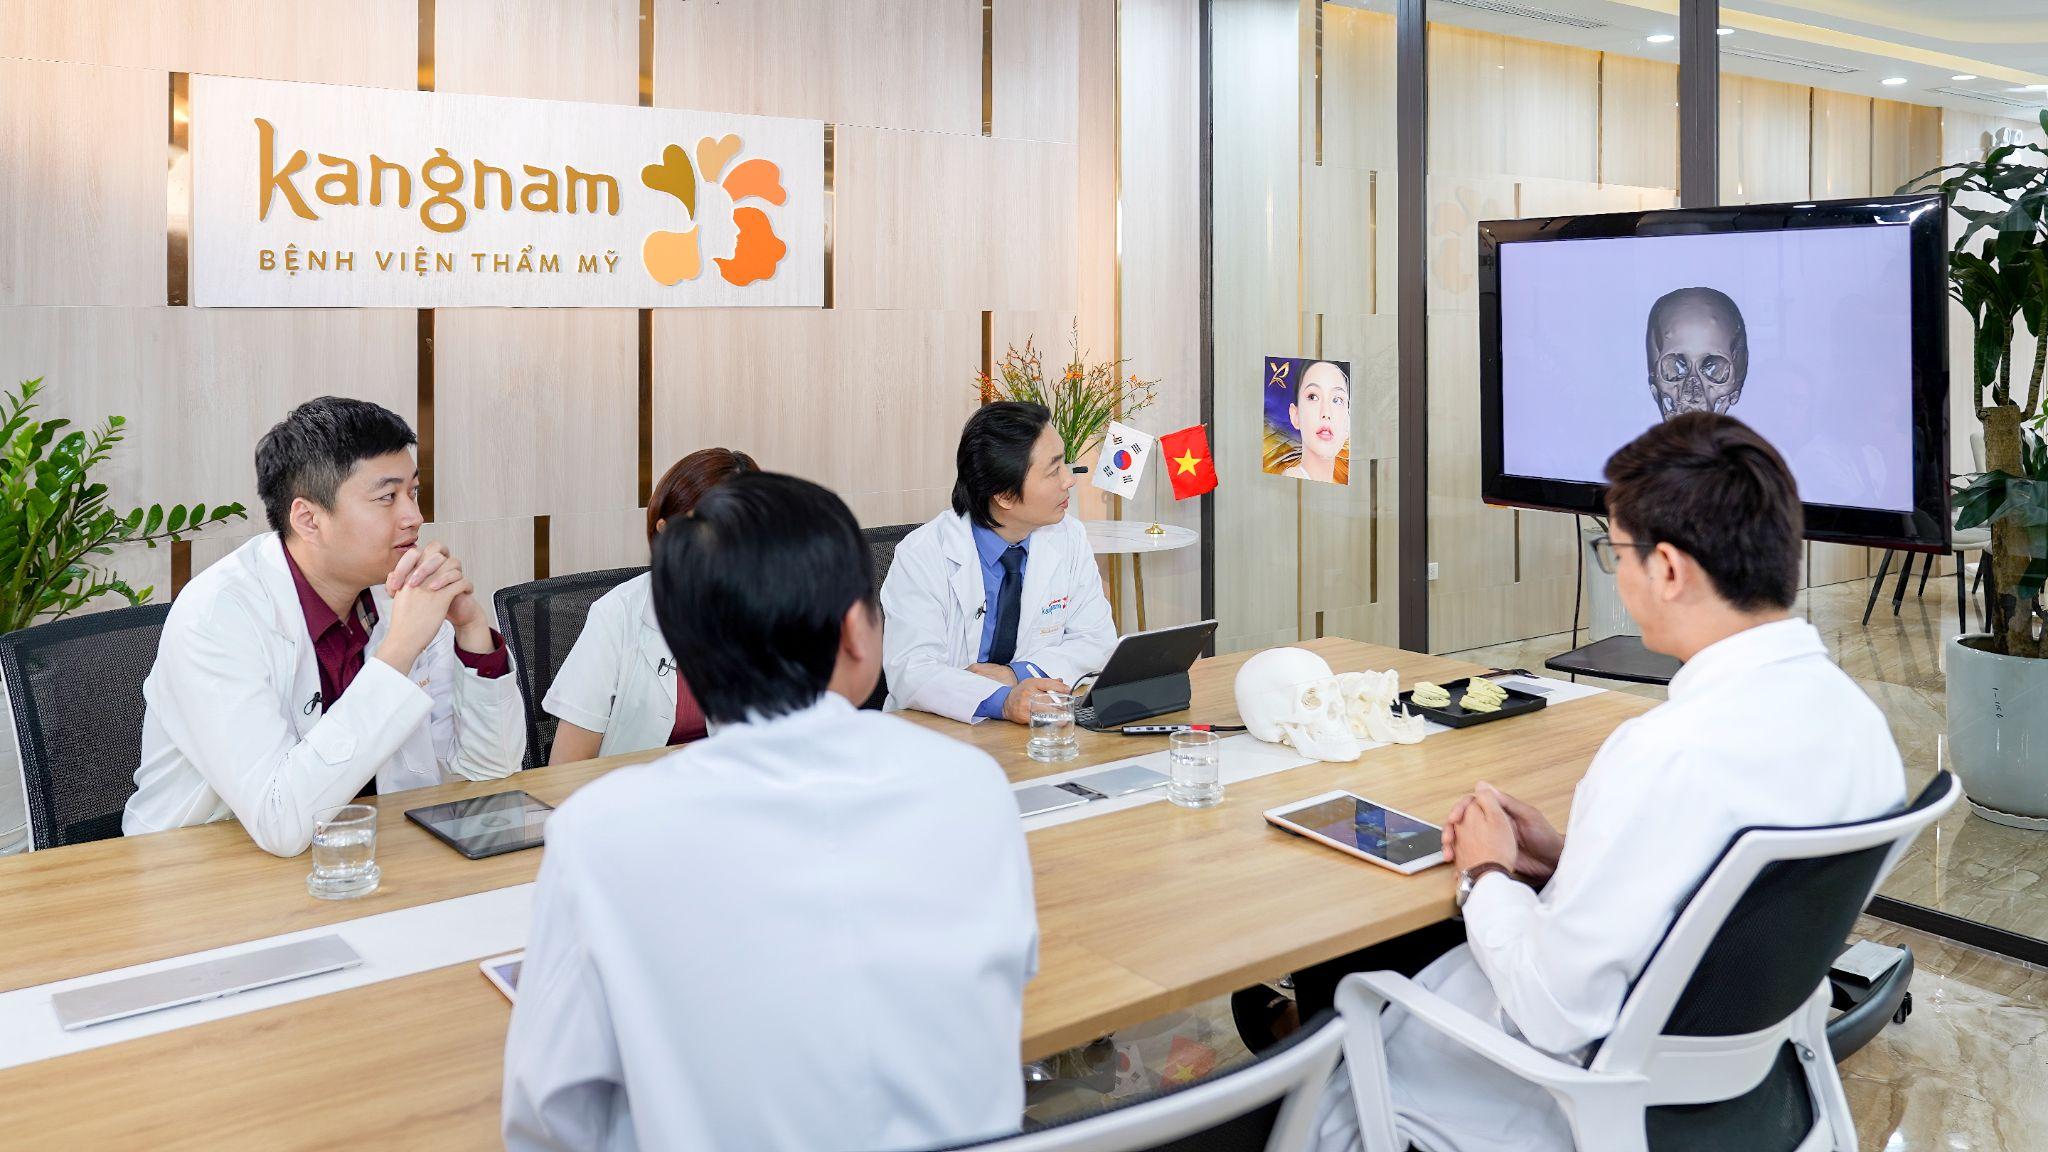 Ekip bác sĩ Kangnam hội chẩn tình trạng khách hàng để tìm ra giải pháp thẩm mỹ tối ưu